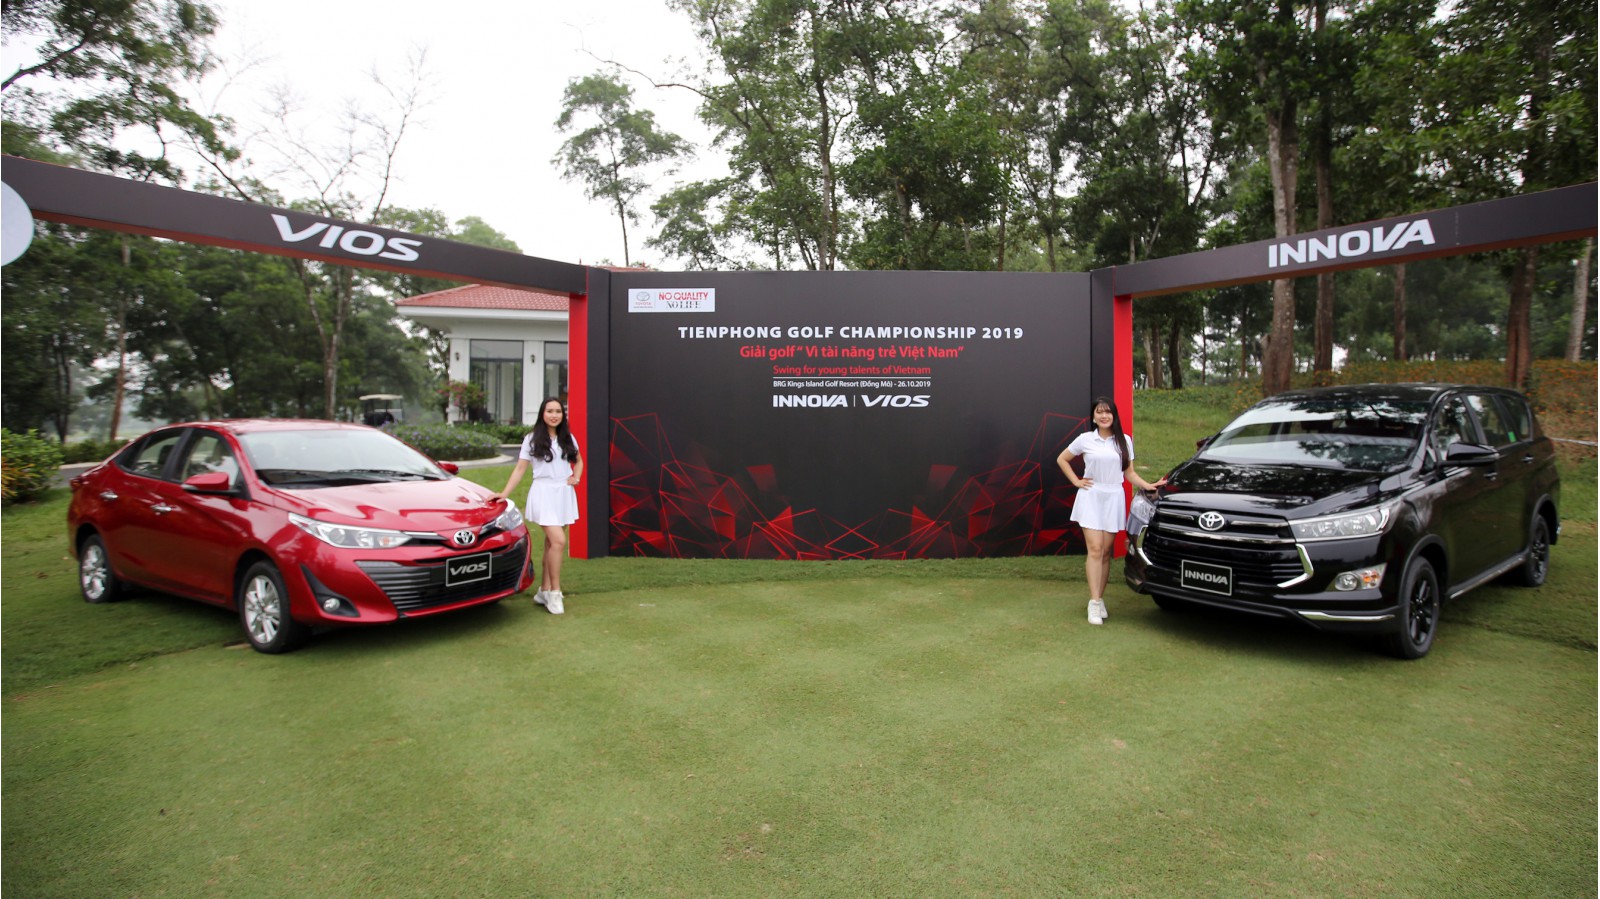 Phần thưởng bao gồm hai xe Innova Venturer và Vios 1.5G của hãng Toyota chờ đón golfer may mắn ghi cú HIO tại hố số 6- Par 3 trên sân Kings Course